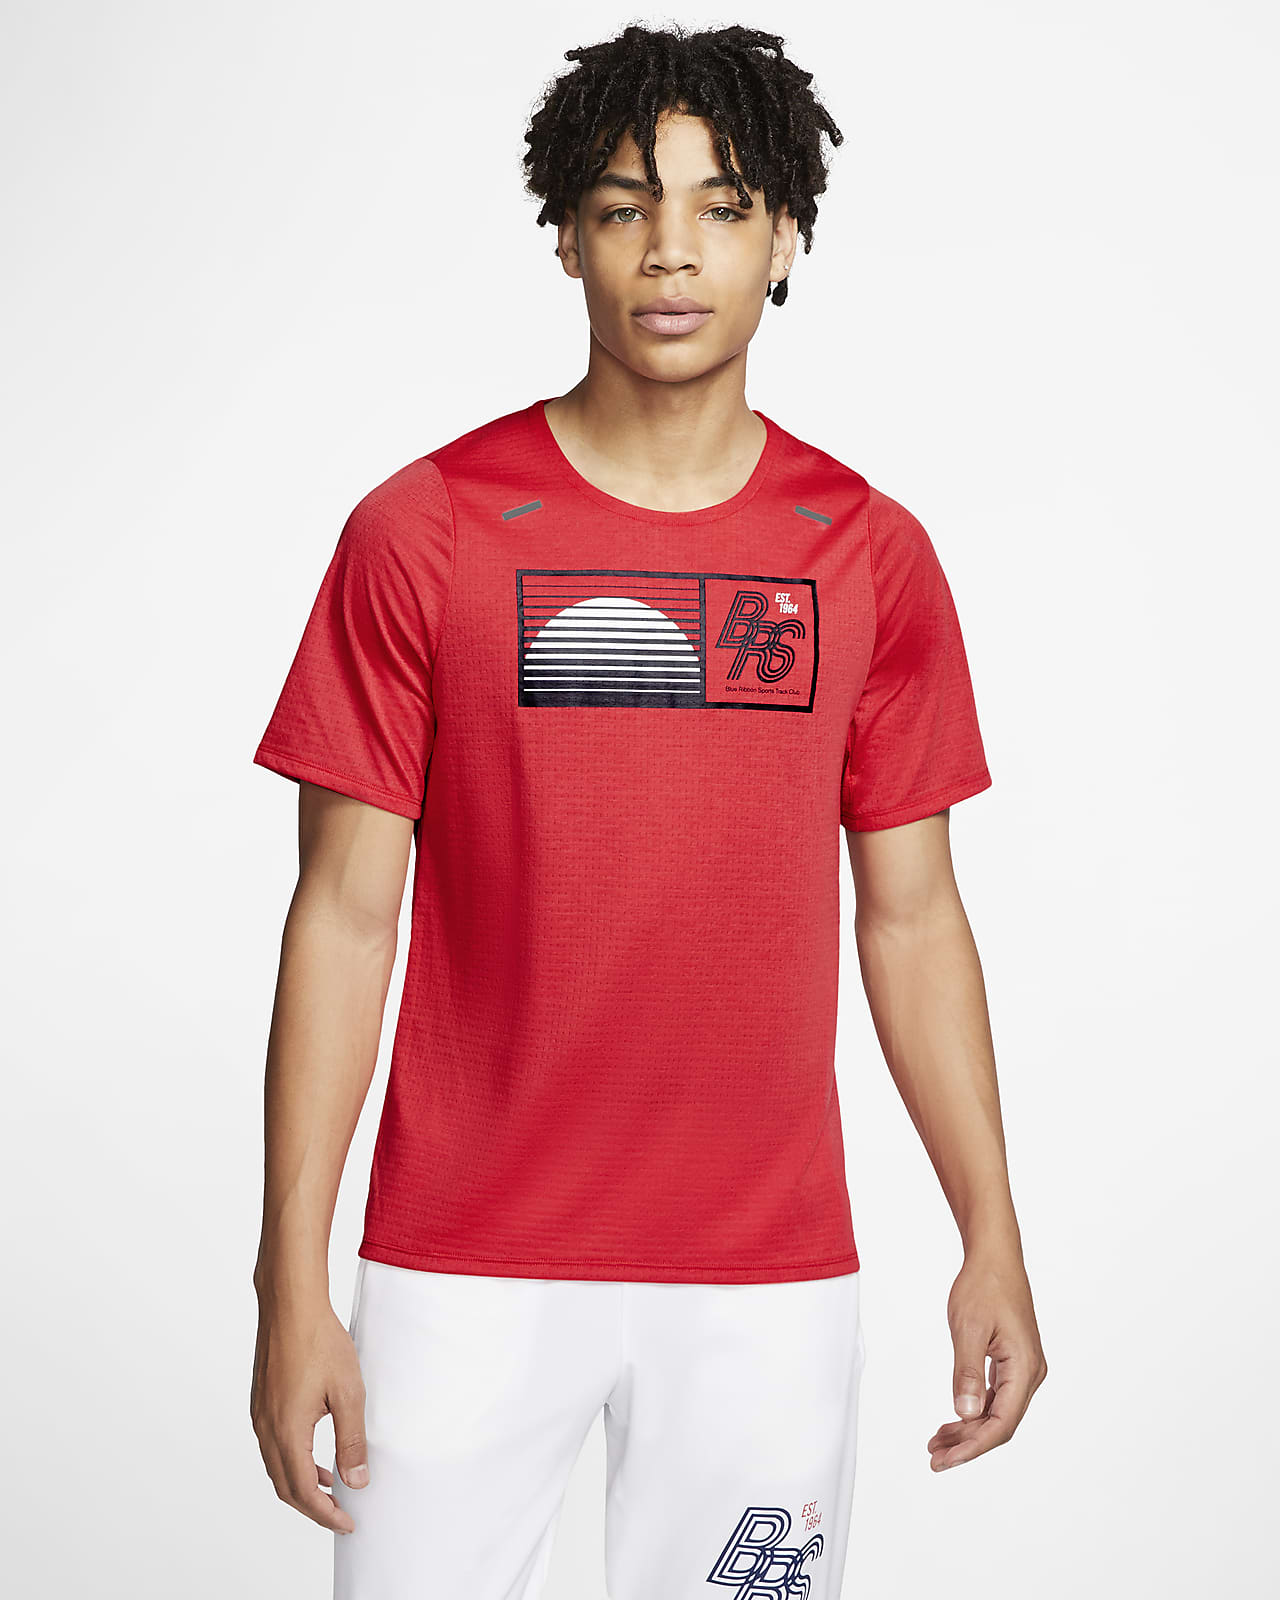 Nike公式 ナイキ ライズ 365 ブルー リボン スポーツ メンズ ランニングトップ オンラインストア 通販サイト